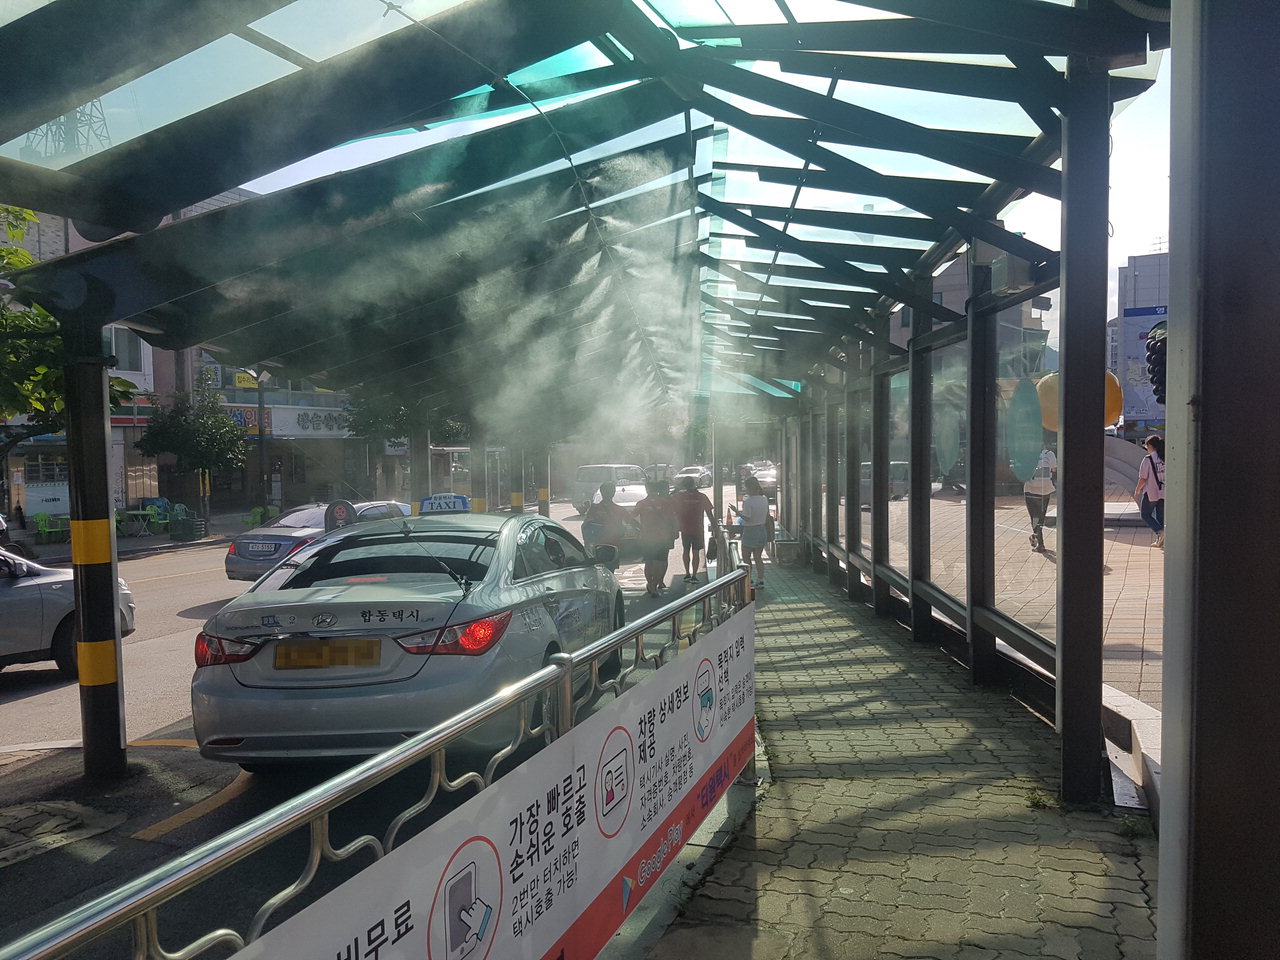 영동역 택시승강장에 폭염 저감시설인 쿨링포그(Cooling Fog)가 가동되고 있다. / 영동군 제공